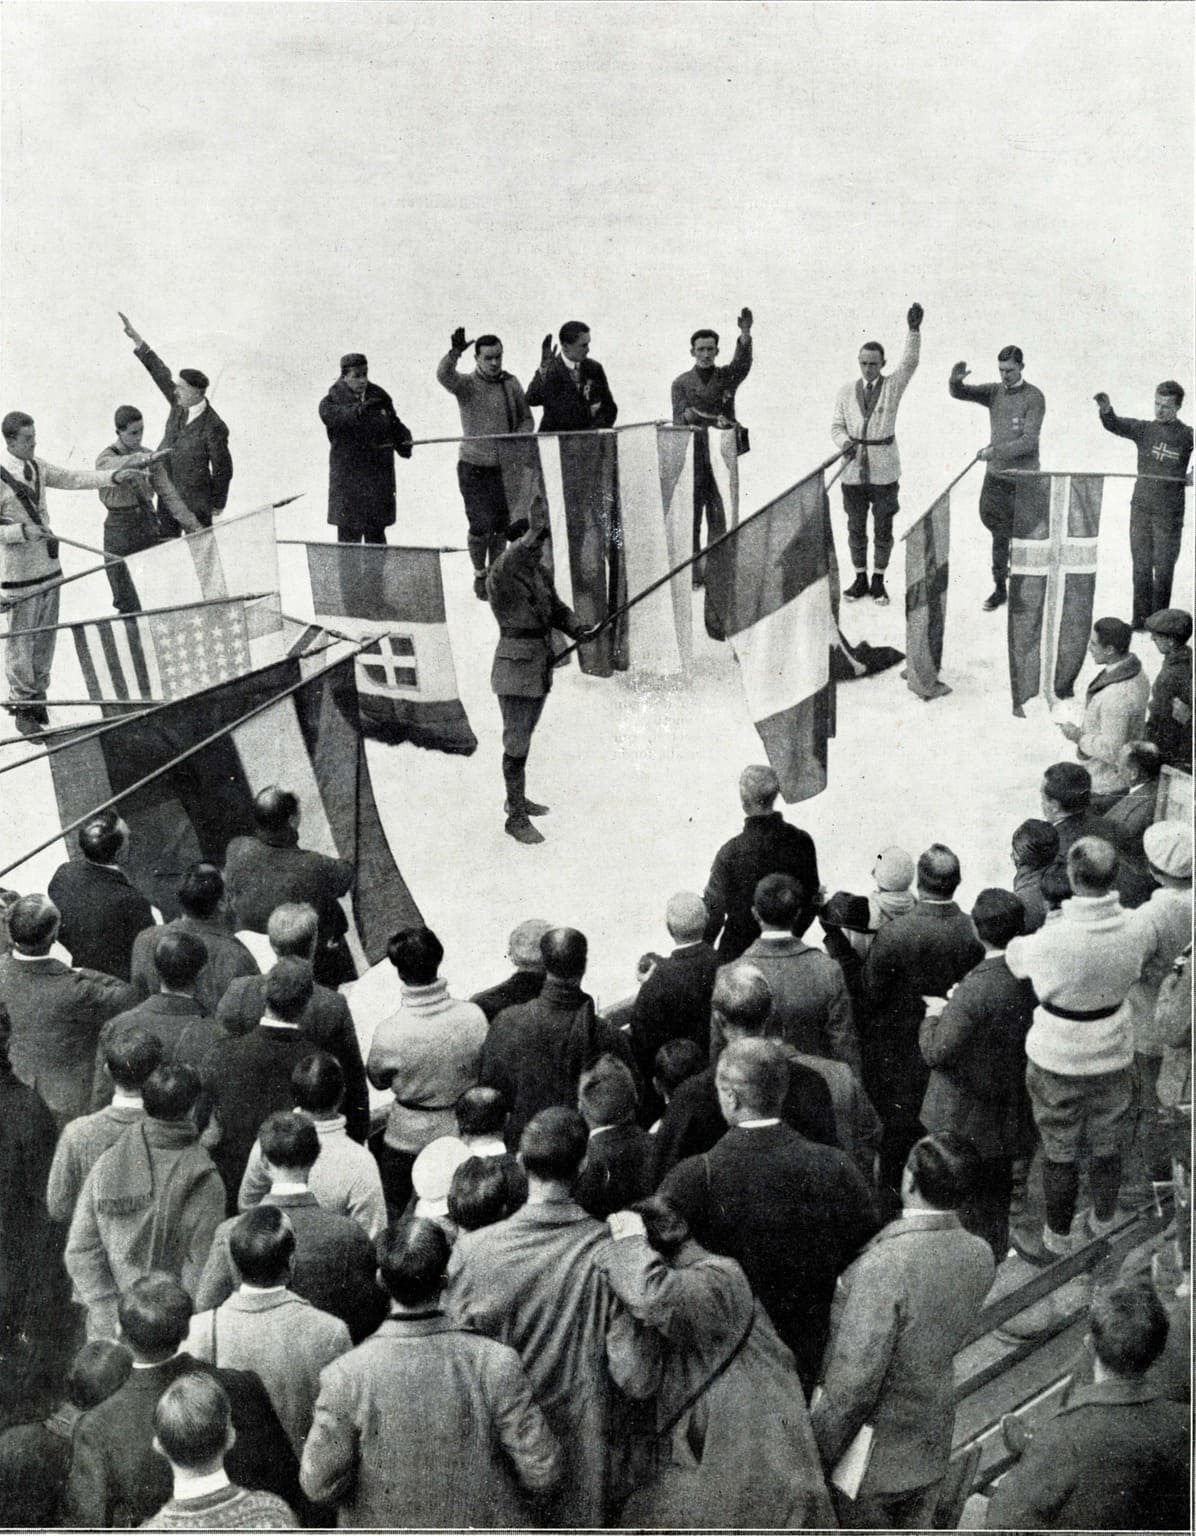  PER 444 / 1 - El juramento olímpico en Chamonix el [25 de enero de 1924], en la Ilustración del 2 de febrero de 1924